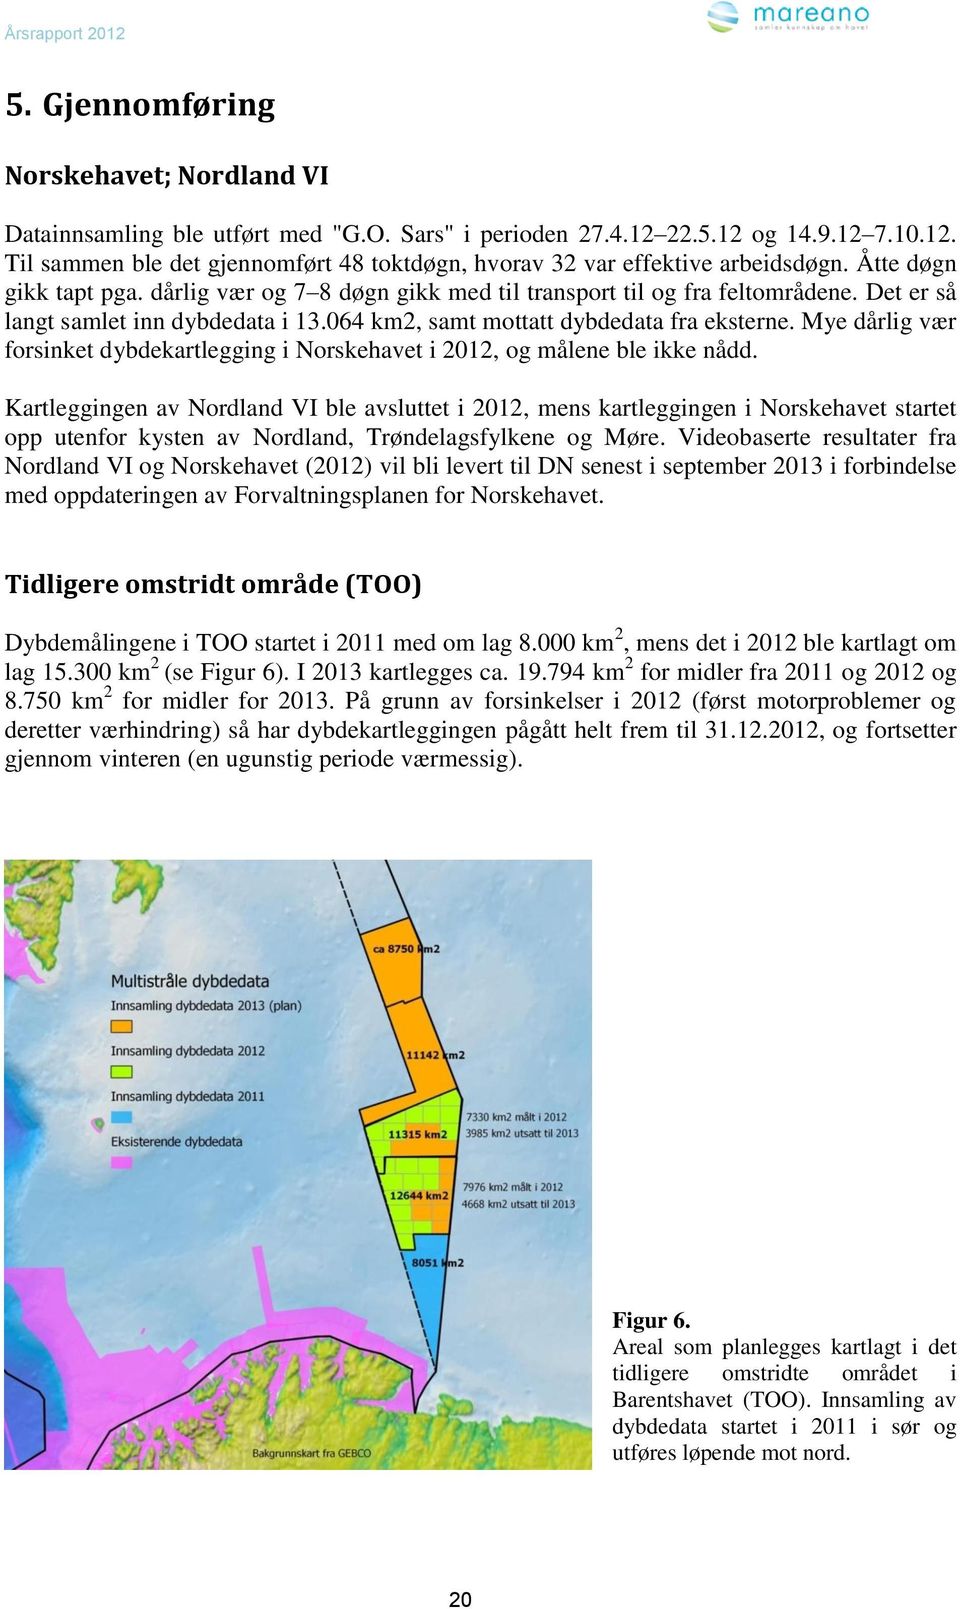 Mye dårlig vær forsinket dybdekartlegging i Norskehavet i 2012, og målene ble ikke nådd.